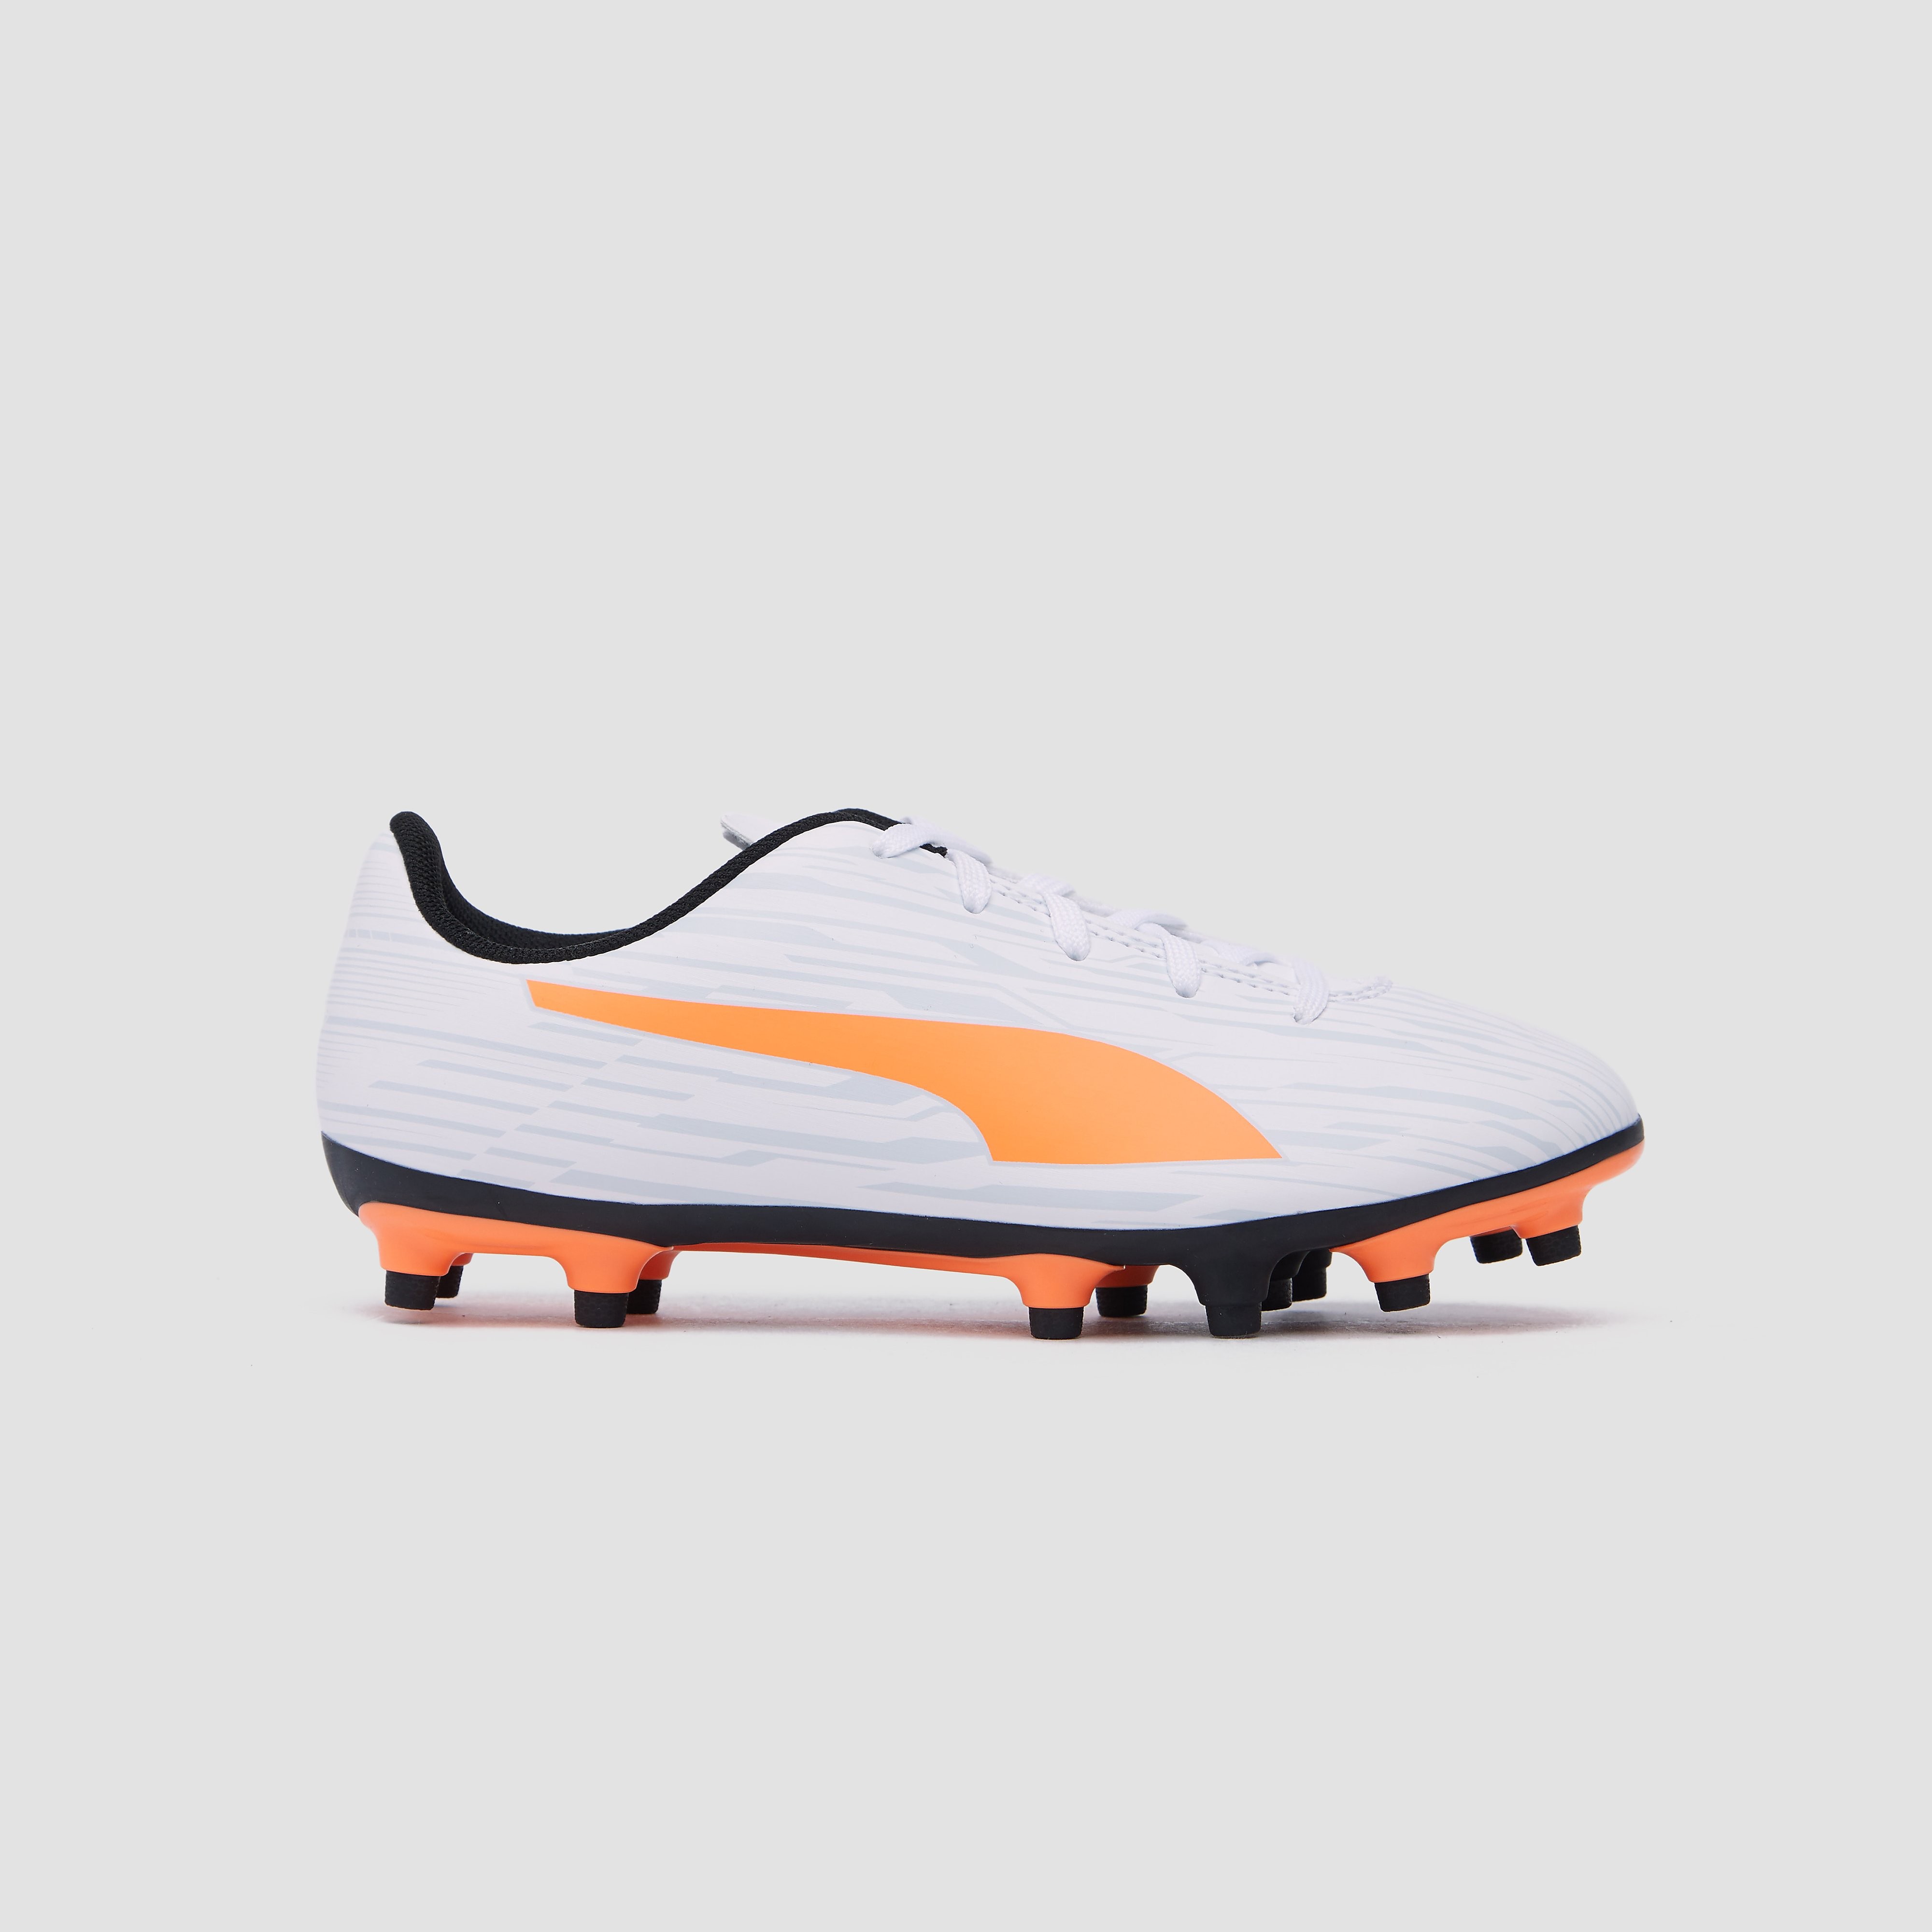 Puma rapido iii fg/ag voetbalschoenen wit/oranje kinderen online kopen